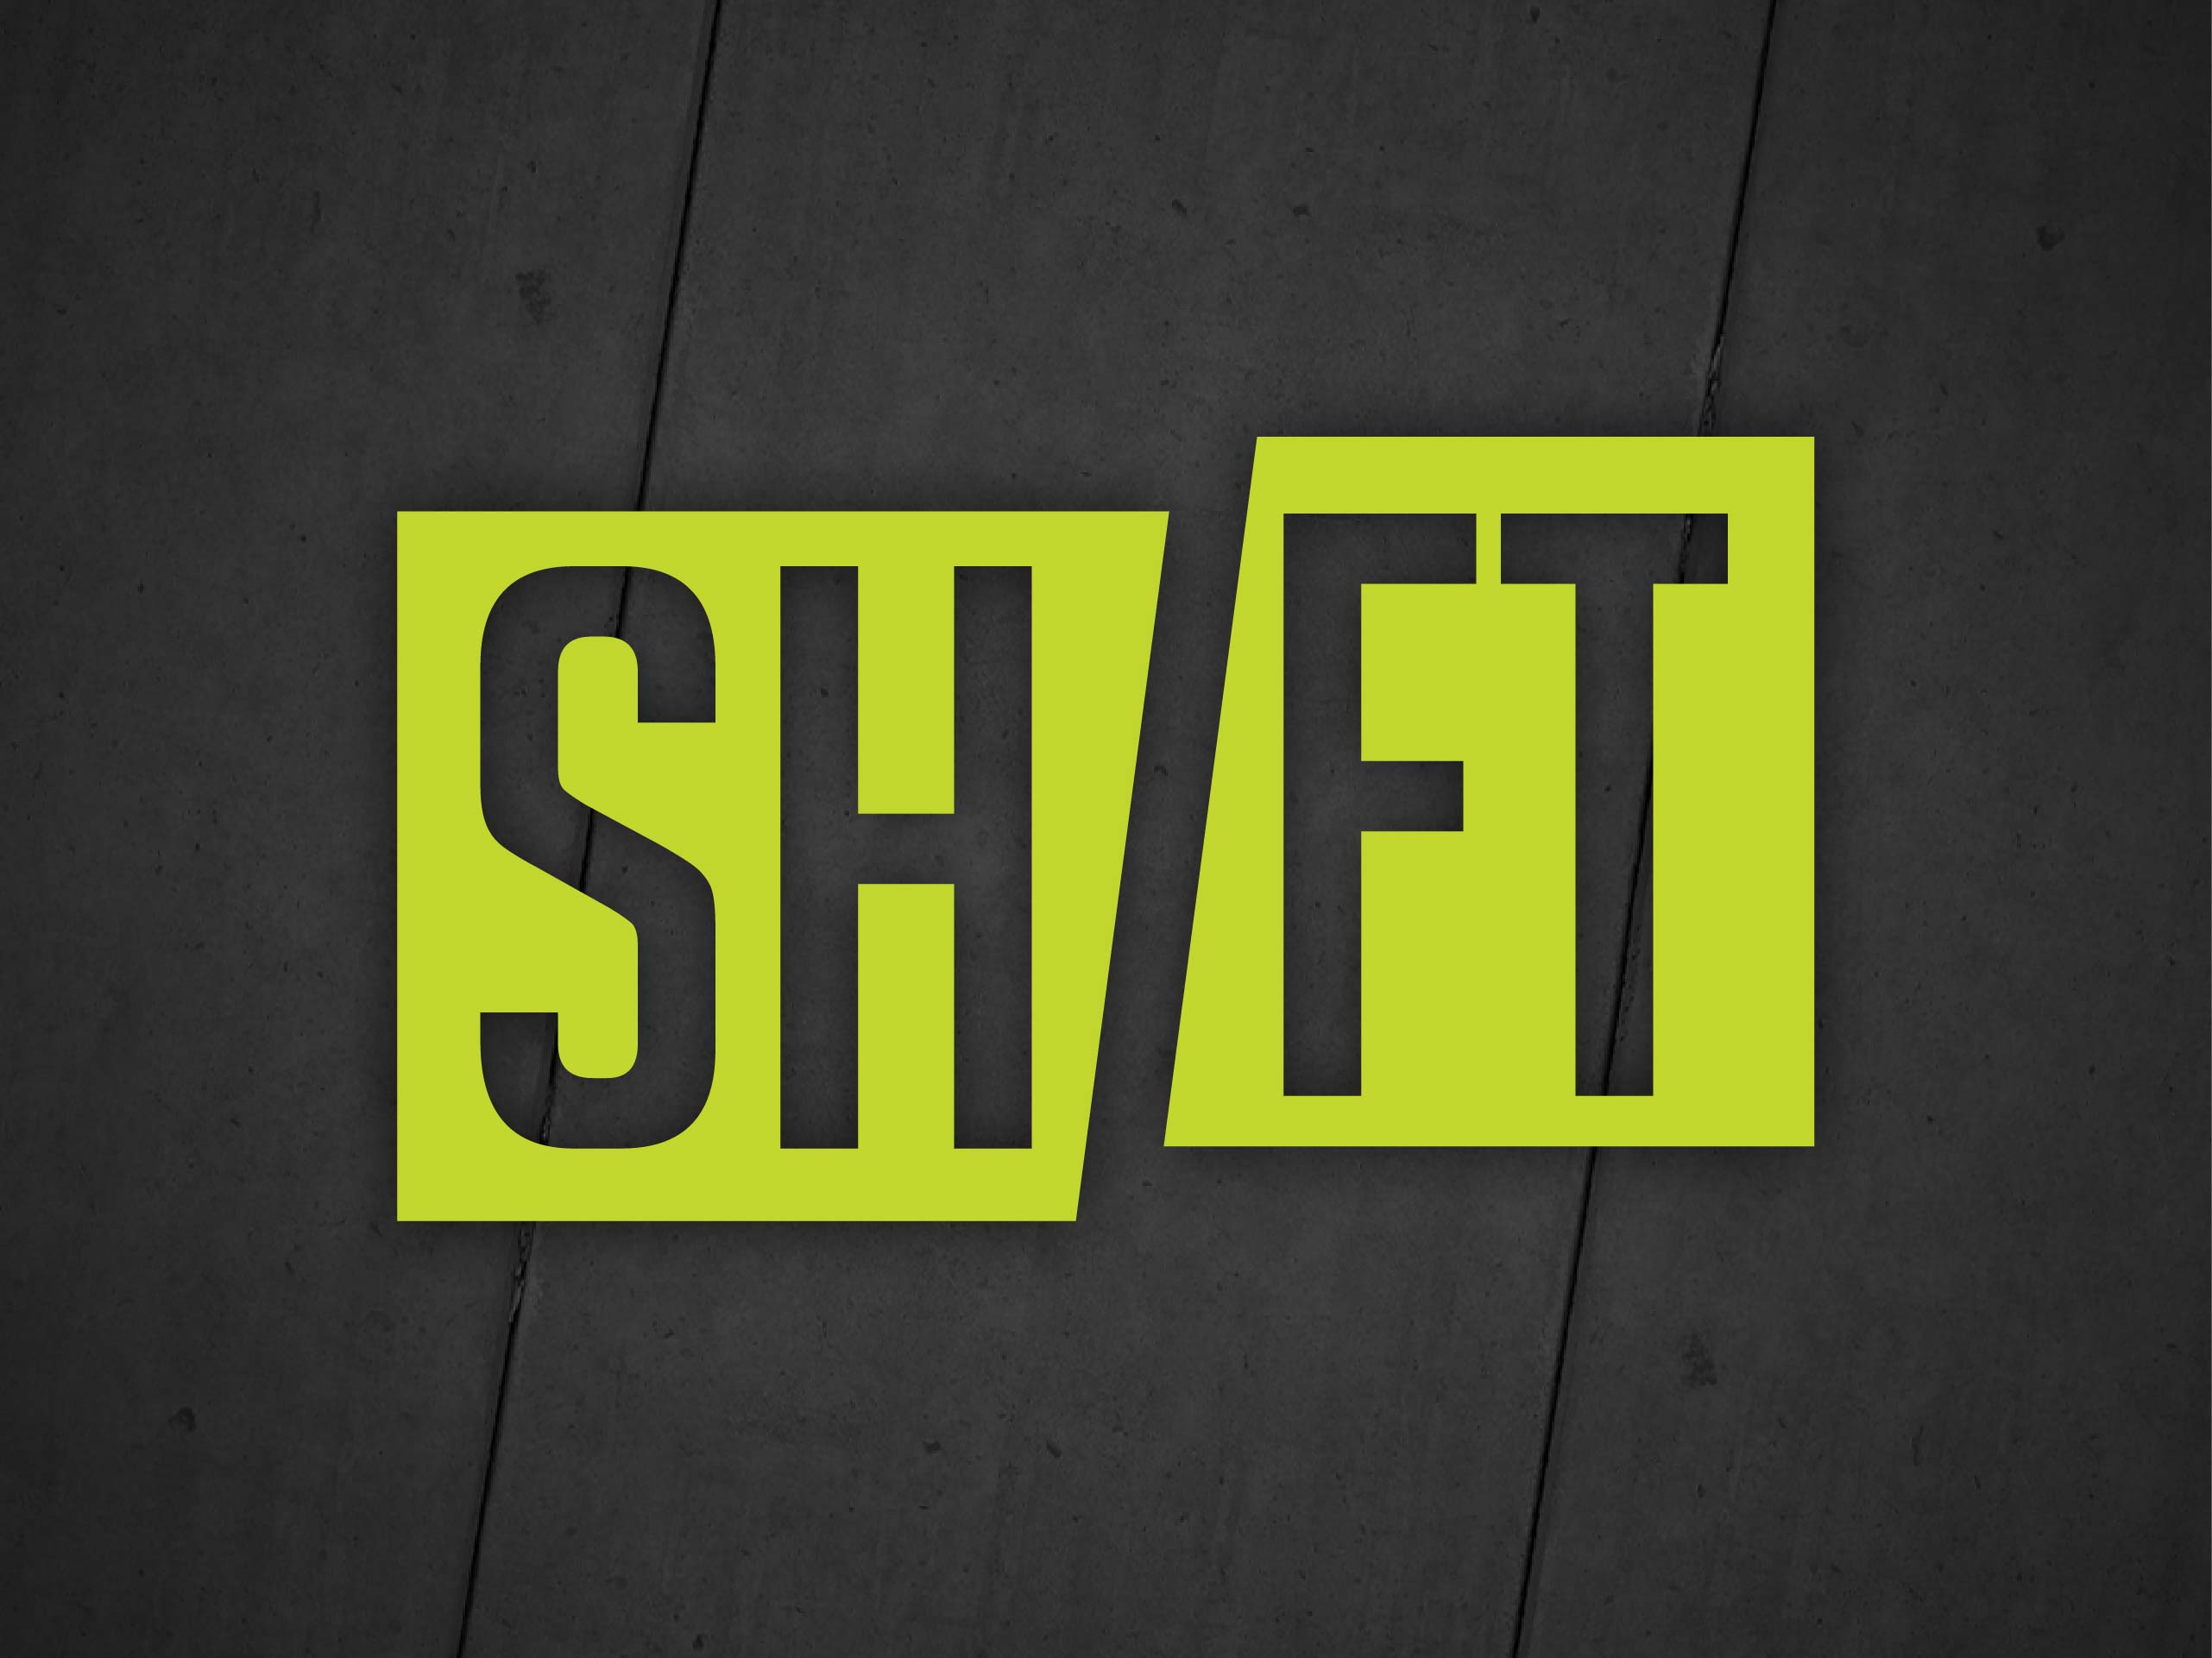 Shift (Part 2)